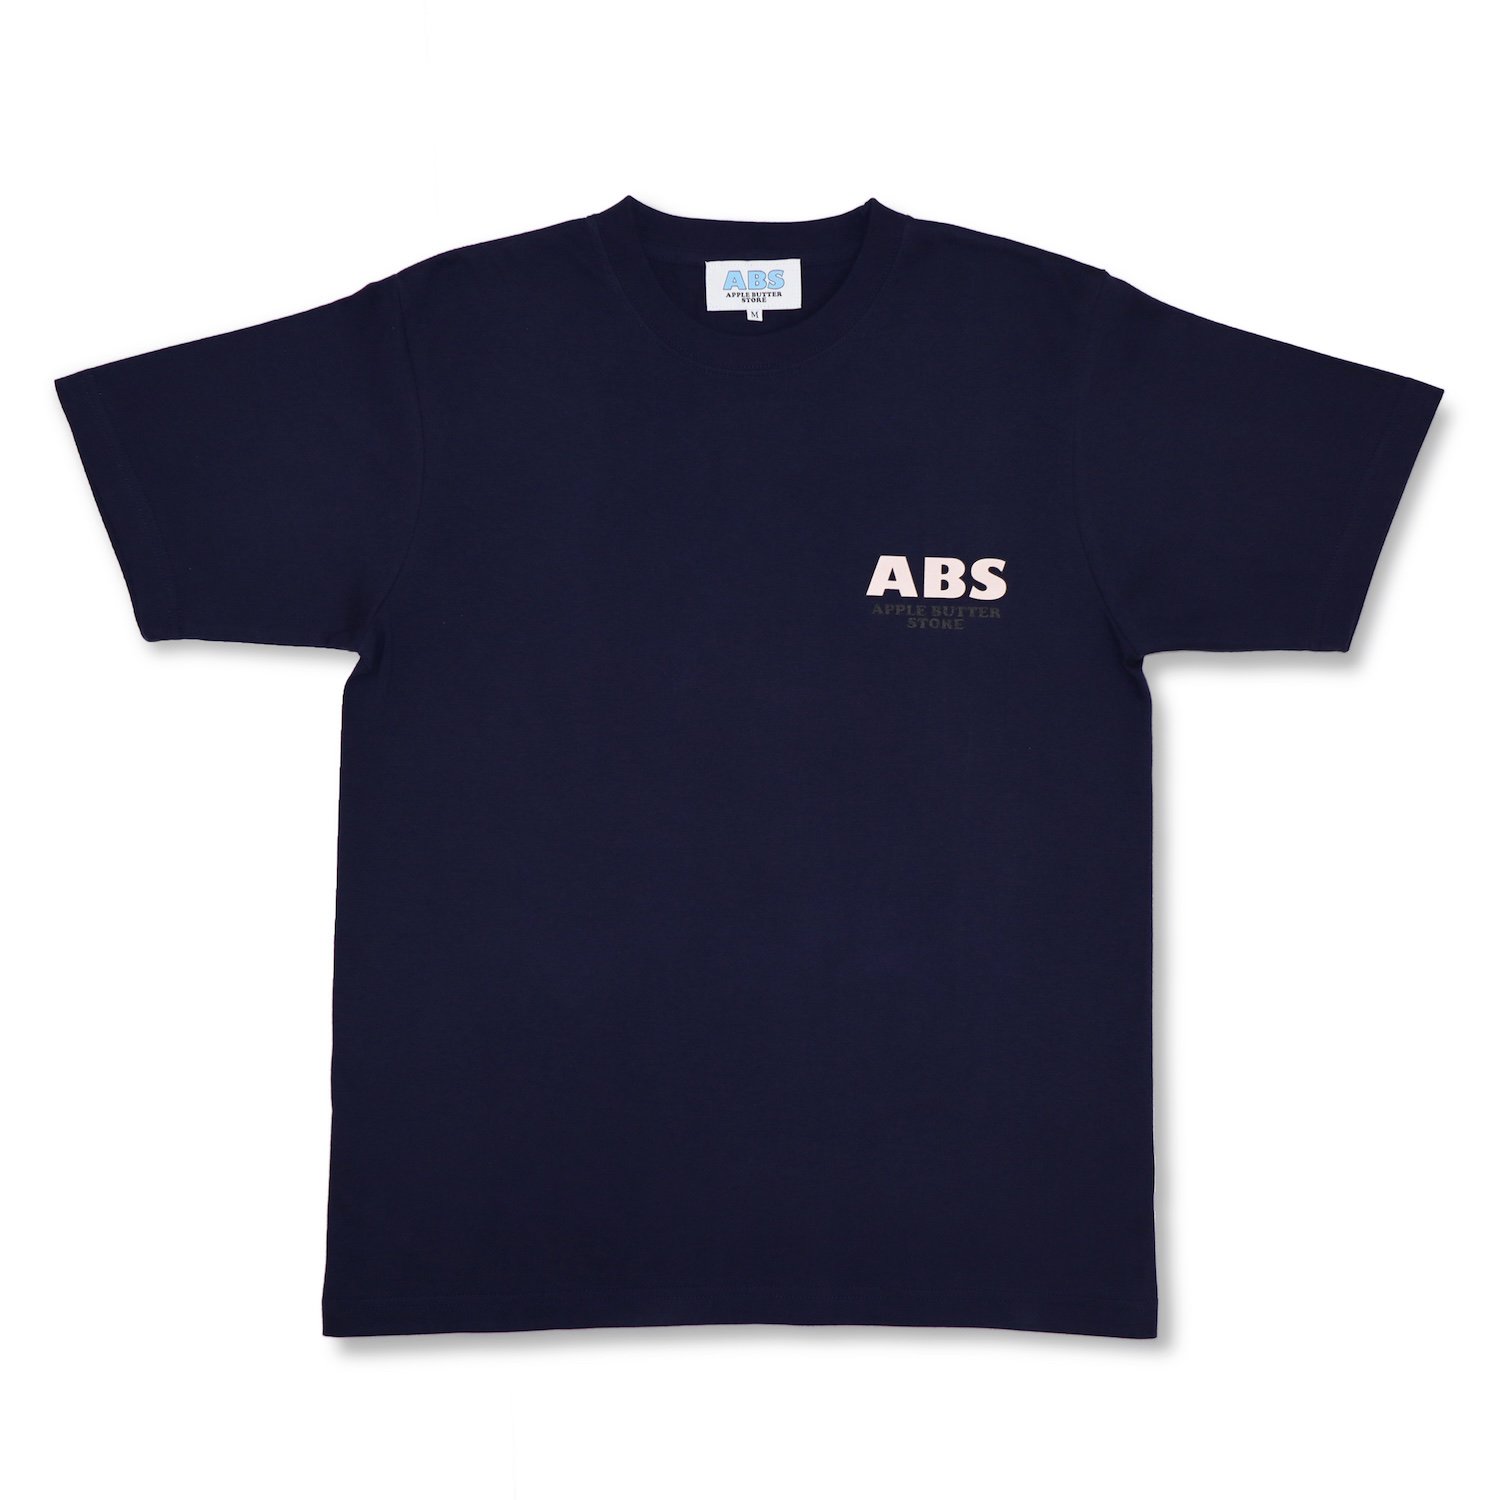 【 Mサイズ】APPLE BUTTER STORE OG S/S TEETシャツ/カットソー(半袖/袖なし)